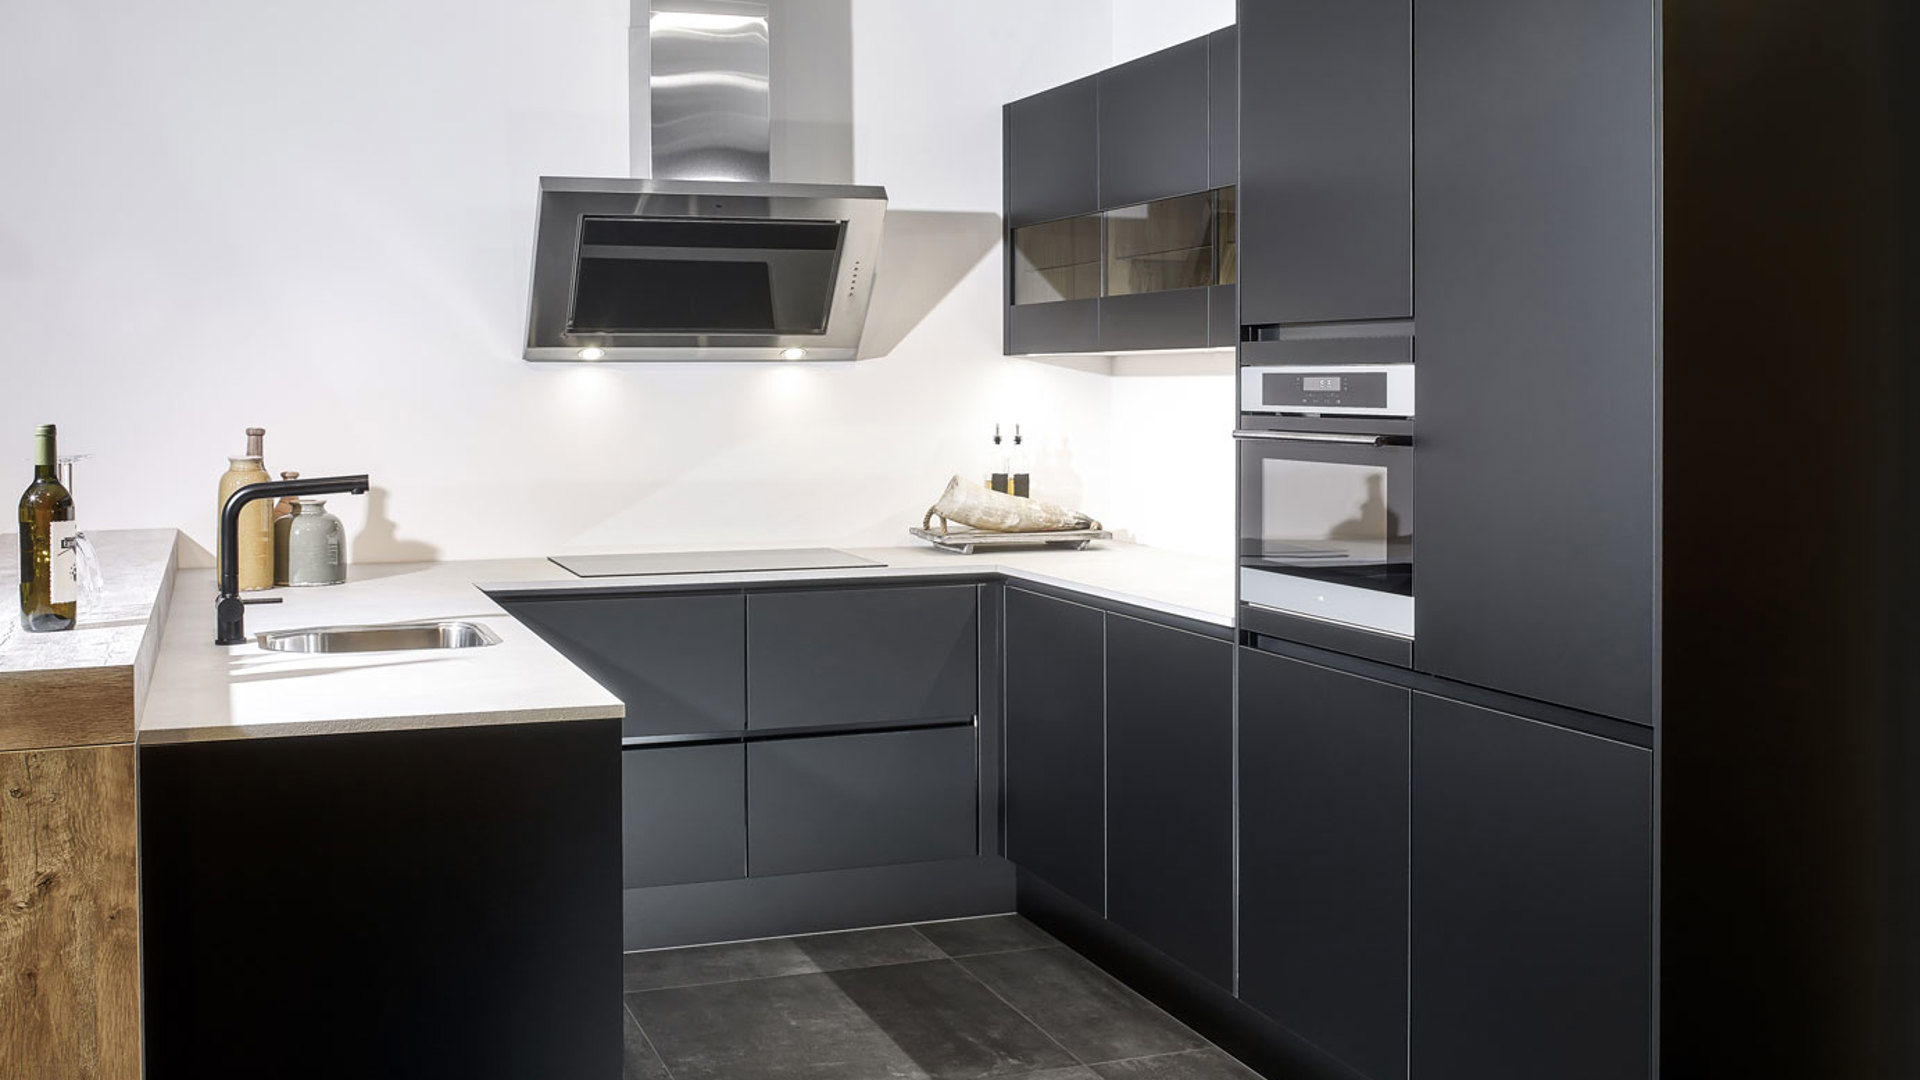 Deze zwarte moderne u-keuken heeft een bar in houtlook